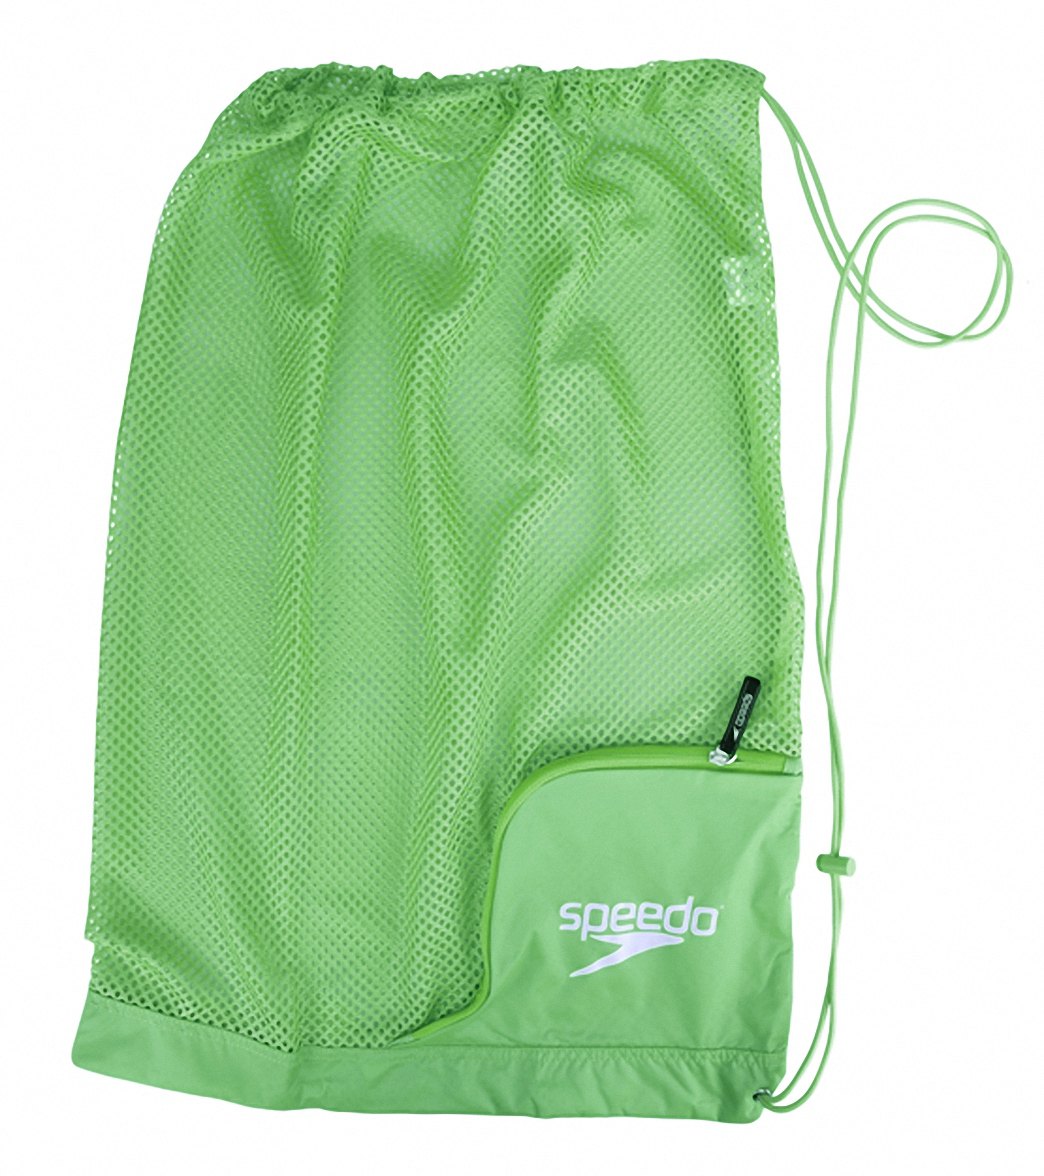 Speedo Ventilator Mesh Bag - Jasmine Green - Swimoutlet.com